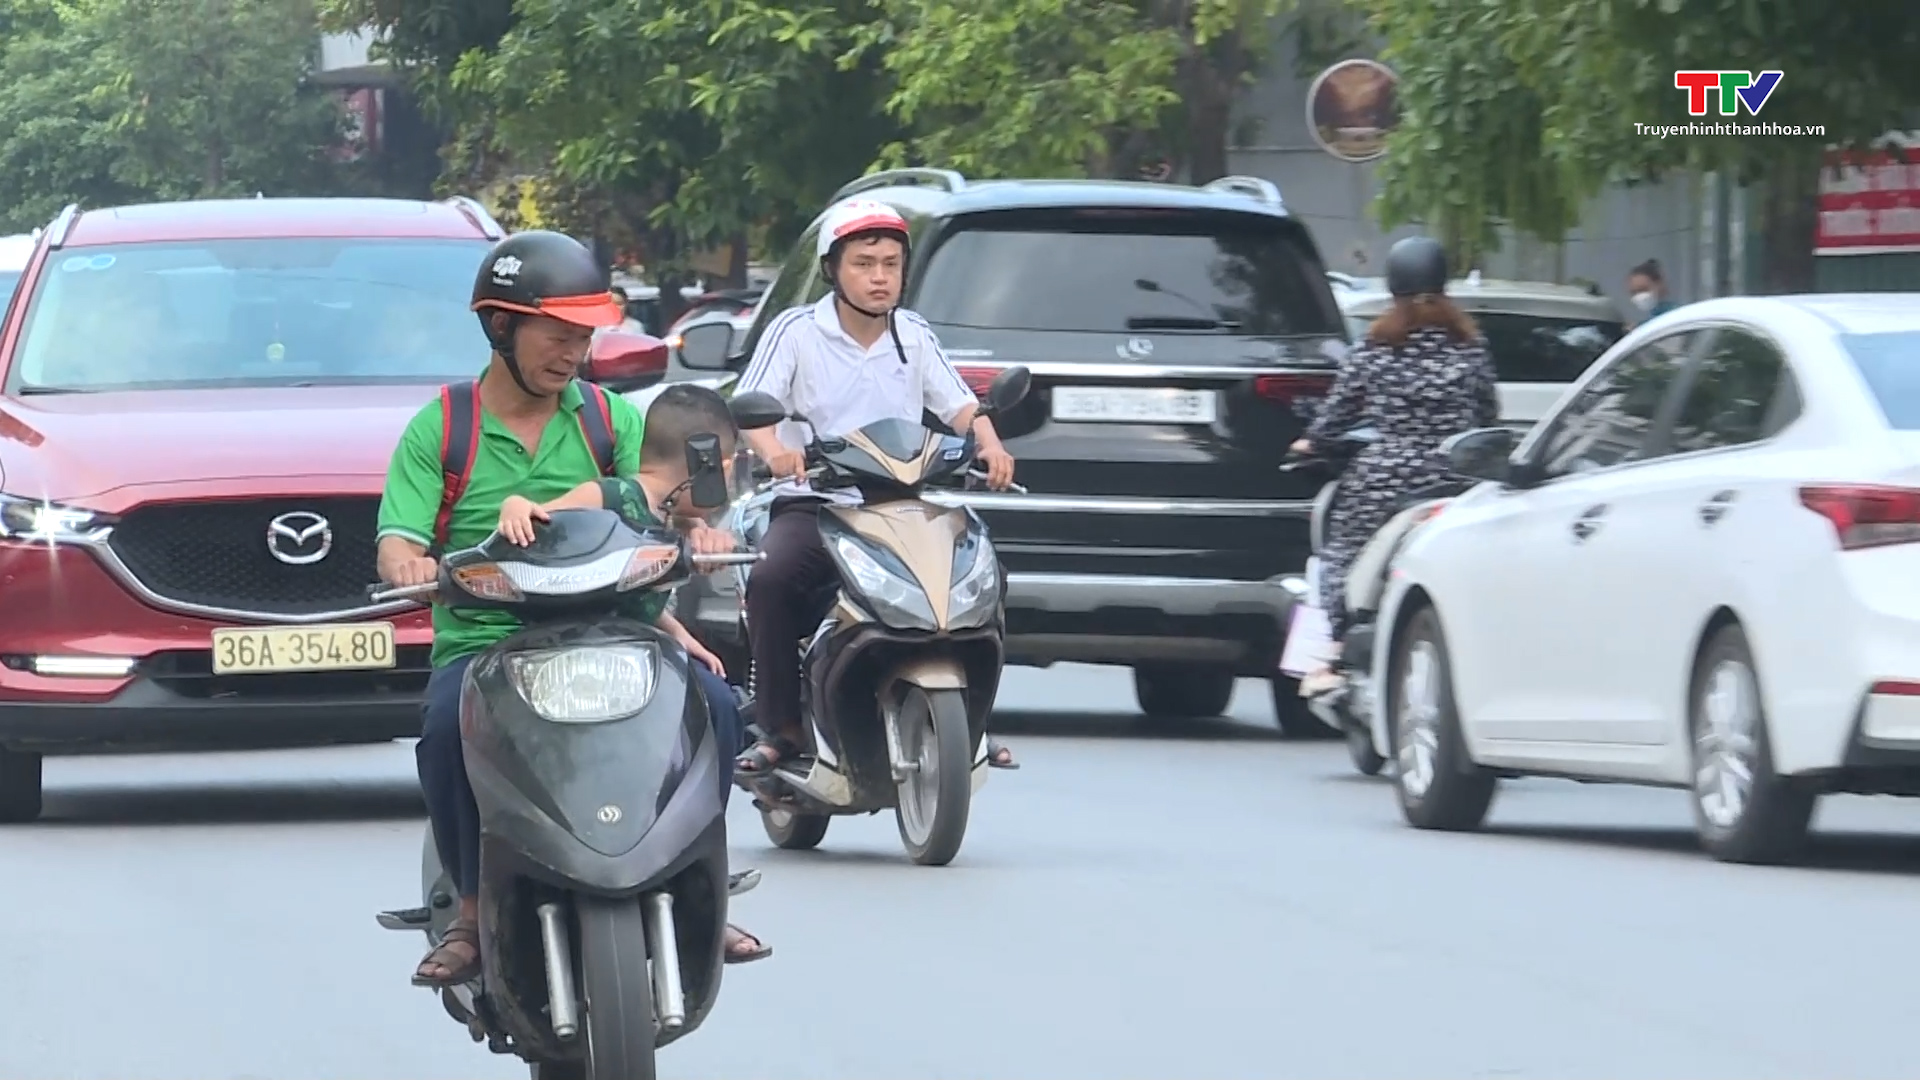 Cảnh báo mất an toàn giao thông khi để trẻ em ngồi trước người lái xe môtô, xe gắn máy - Ảnh 3.